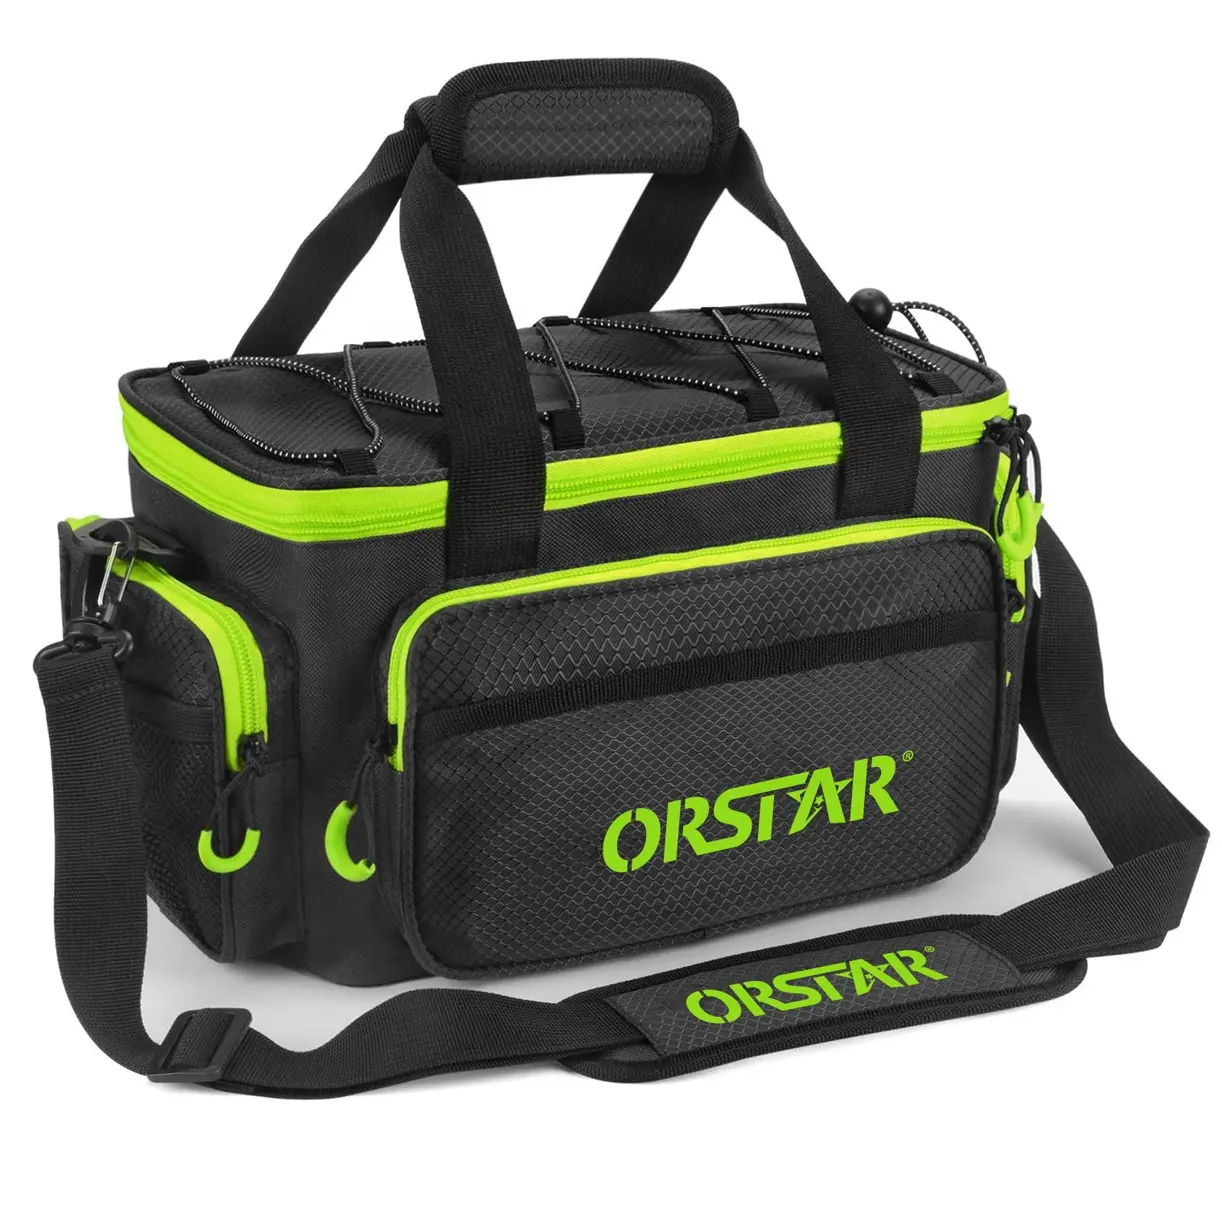 ORSTER 경량 낚시 태클 가방 야외 낚시 가방 방수 낚시 미끼 가방